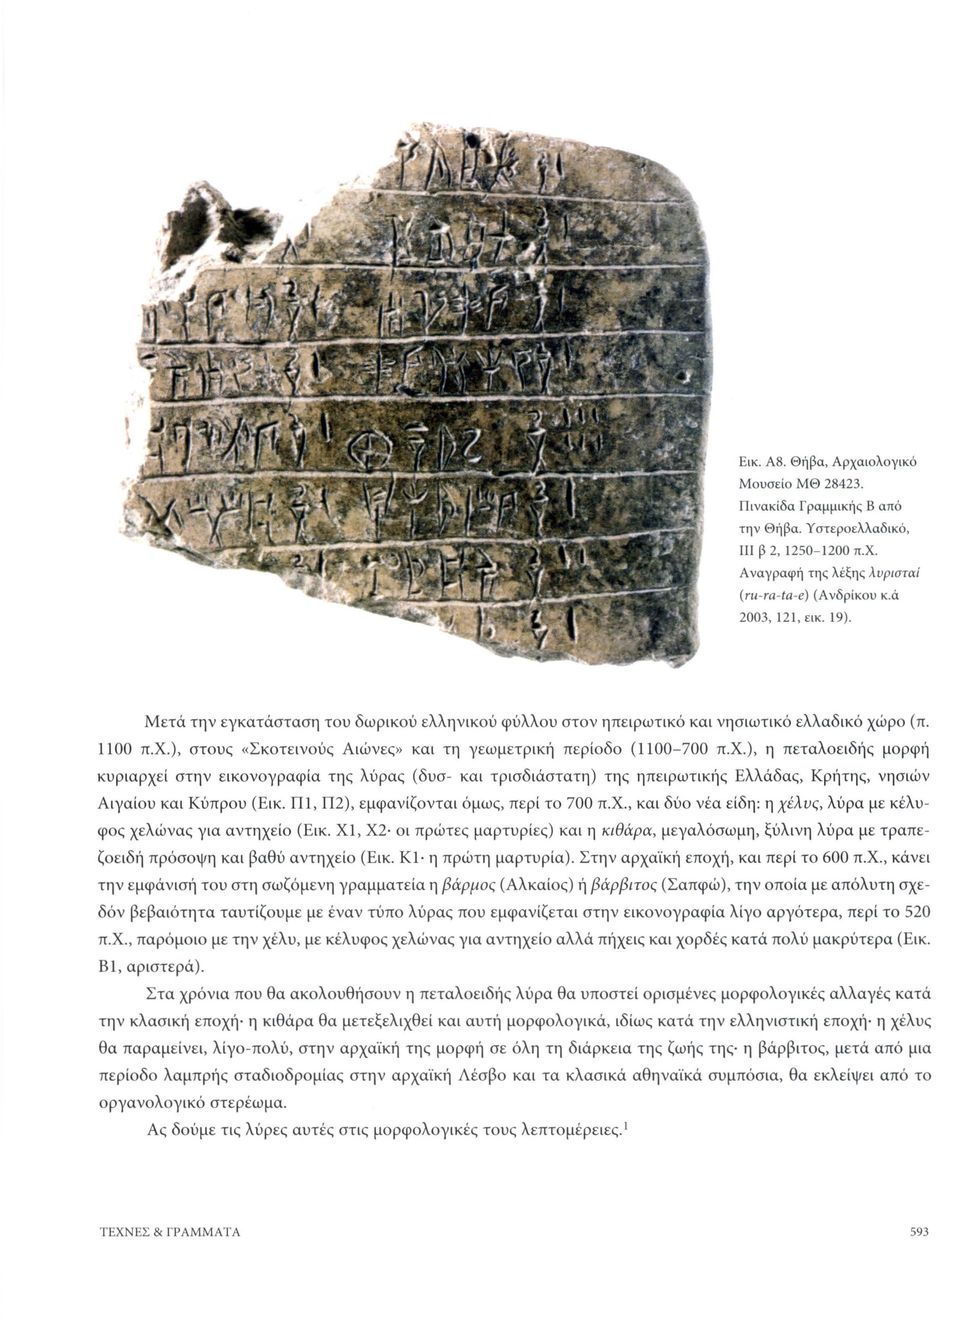 ρο (π. 1100 π.χ.), στοικ «Σκο τ ε ι νο ύ τ Α ιώνεο - και τ η γεωμετρ ική περίοδο (1100-700 π.